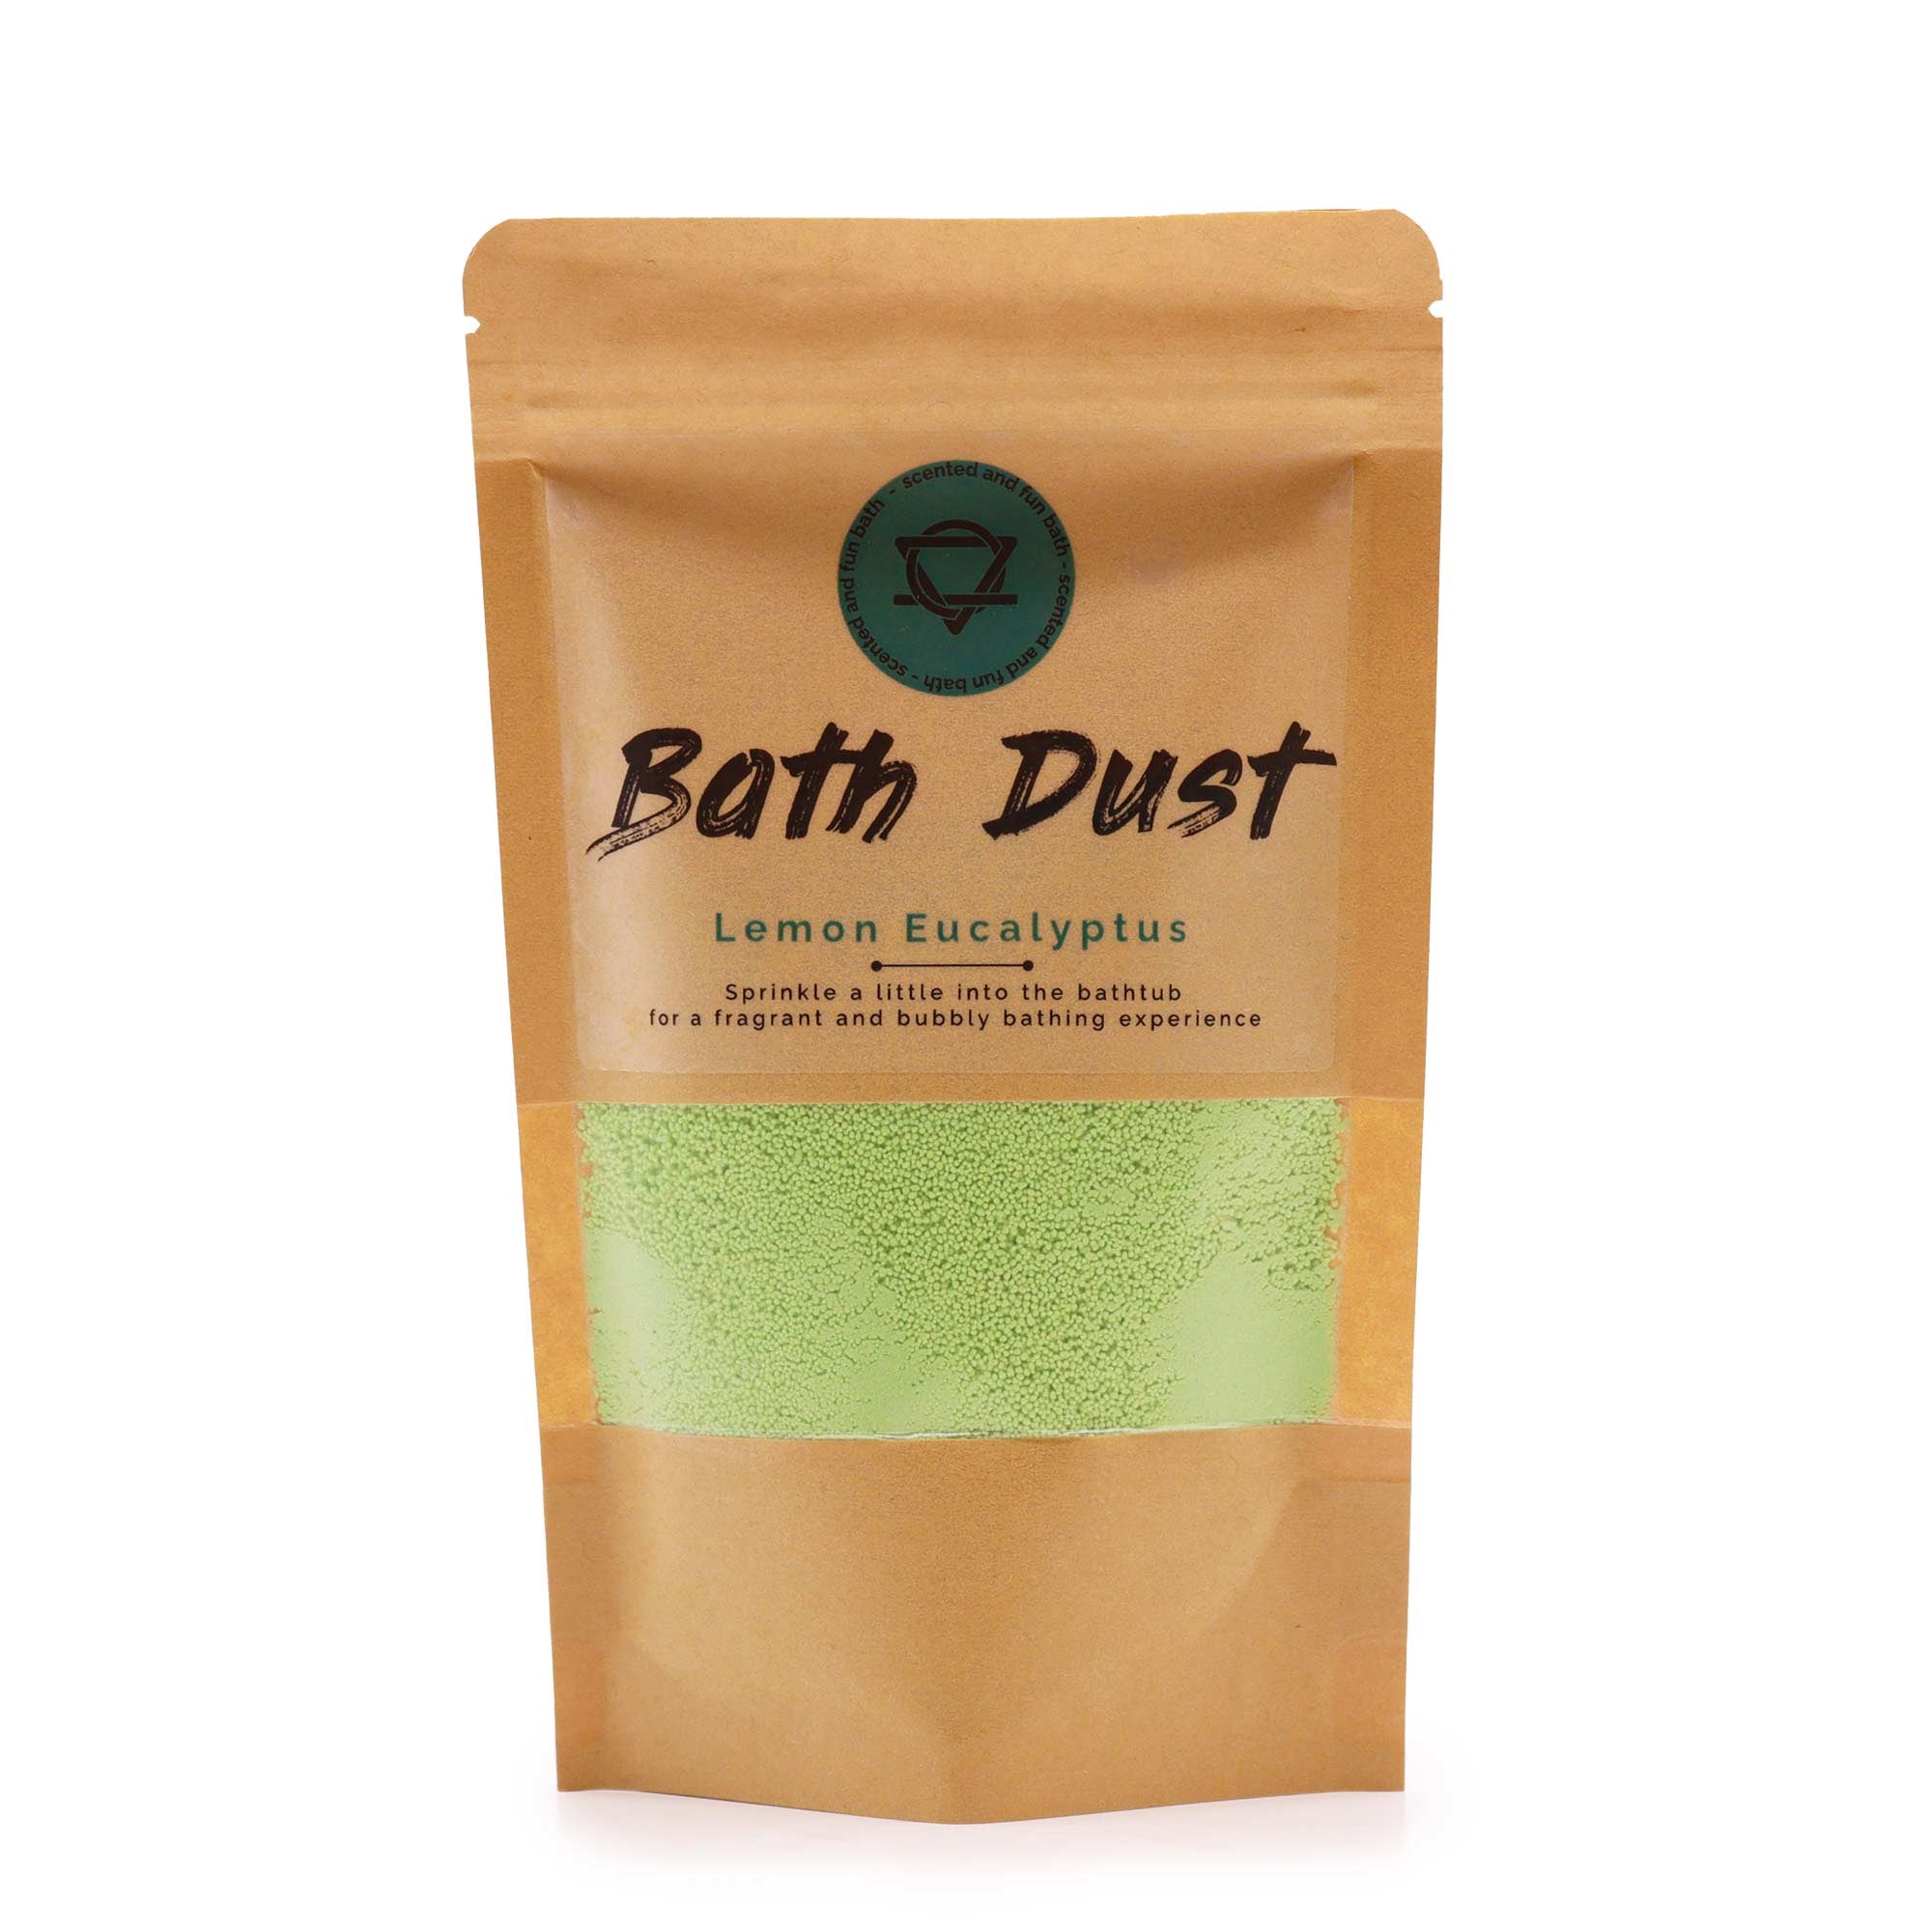 View Lemon Eucalyptus Bath Dust 190g information